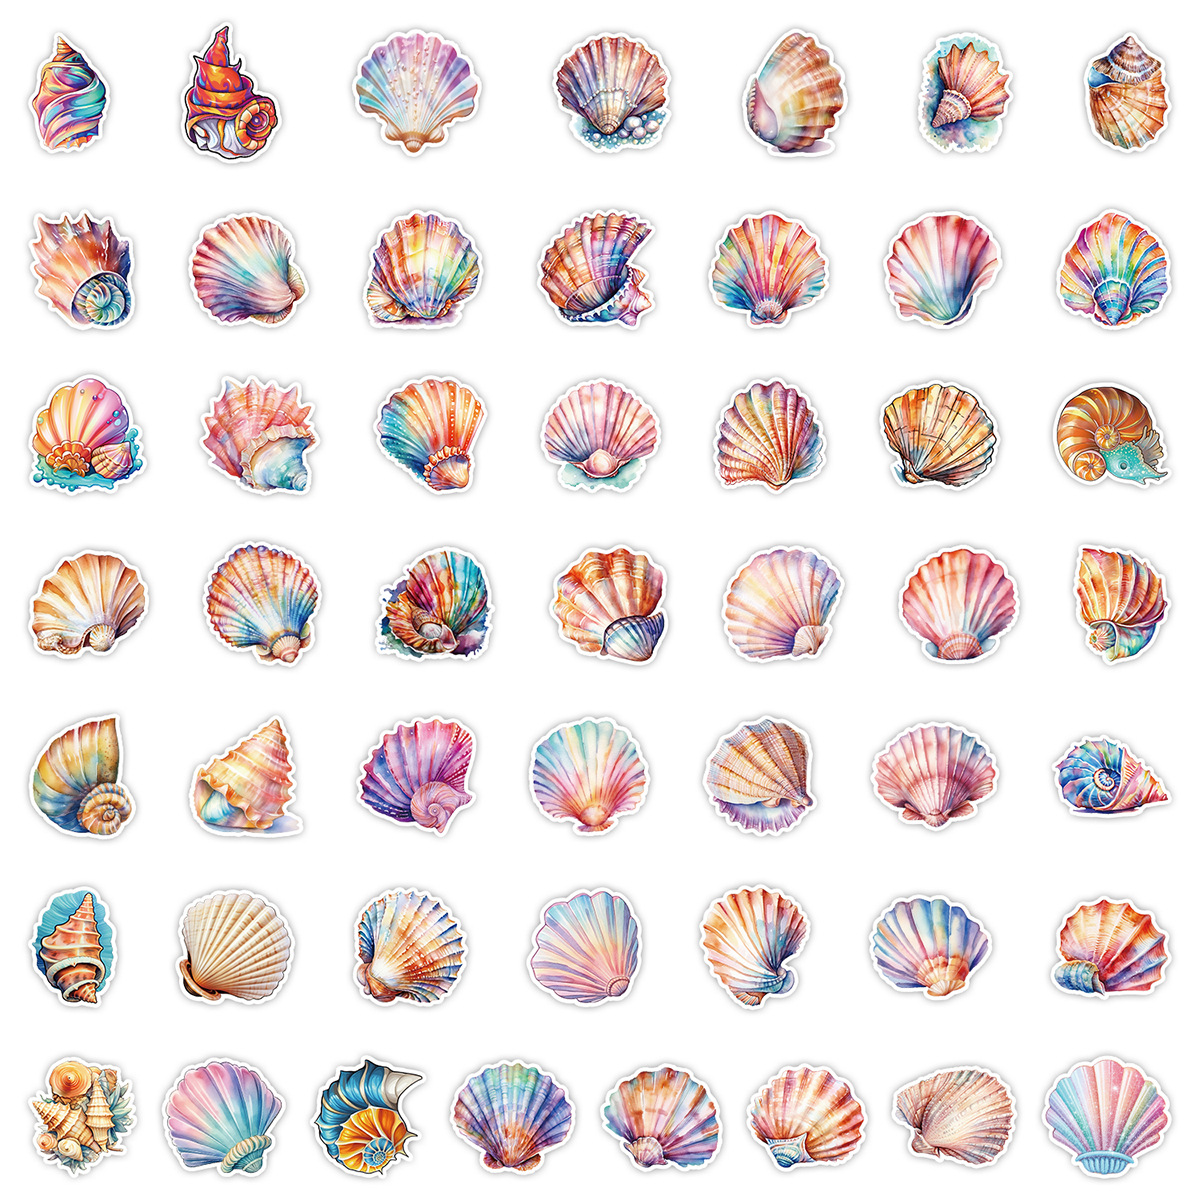 50 Ocean Series Stickers